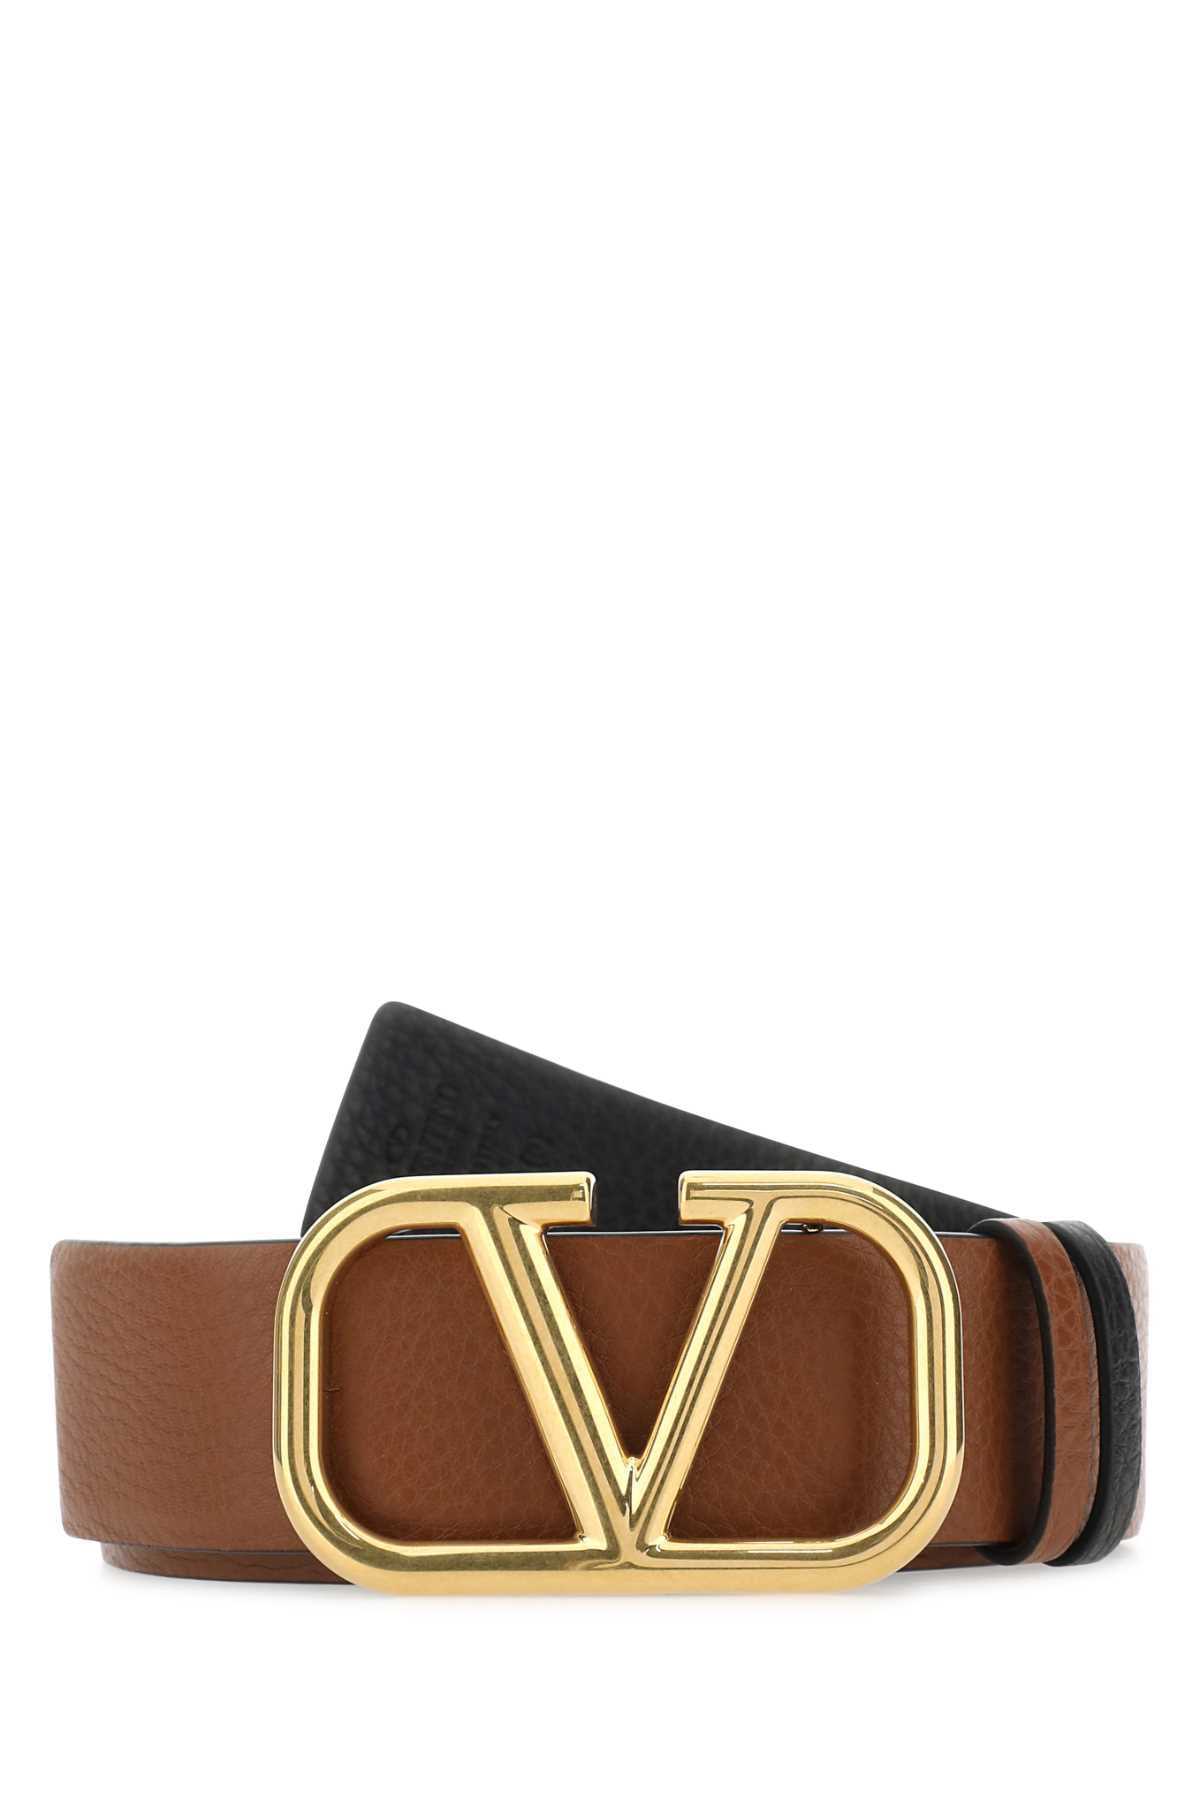 Valentino Garavani VLogo Reversible Leather Belt - Black for Men